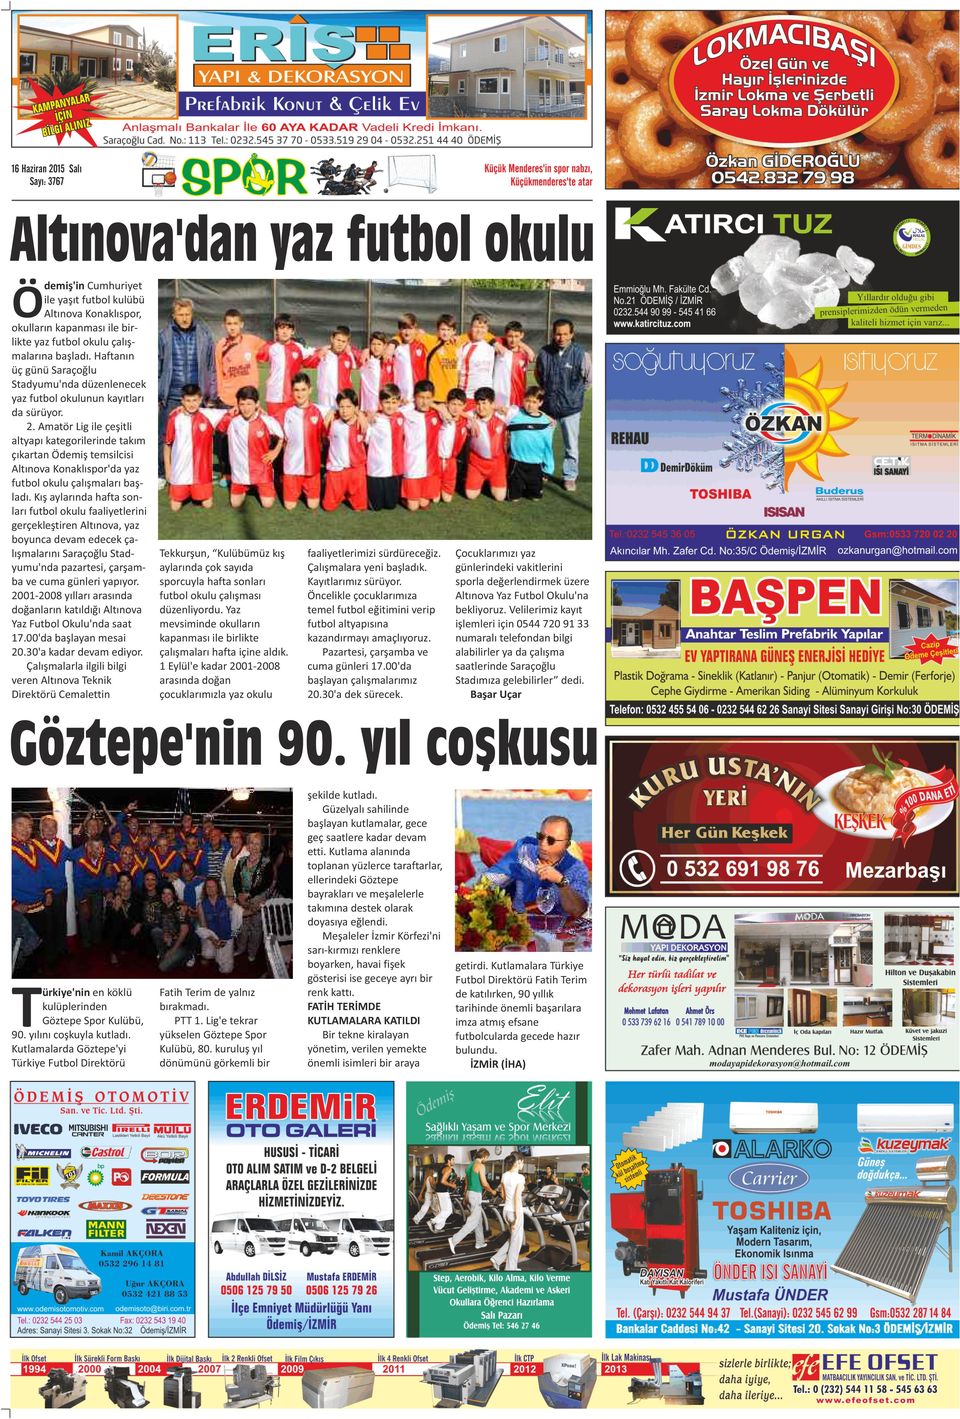 . Amatör Lig ile çeşitli altyapı kategorilerinde takım çıkartan Ödemiş temsilcisi Altınova Konaklıspor'da yaz futbol okulu çalışmaları başladı.